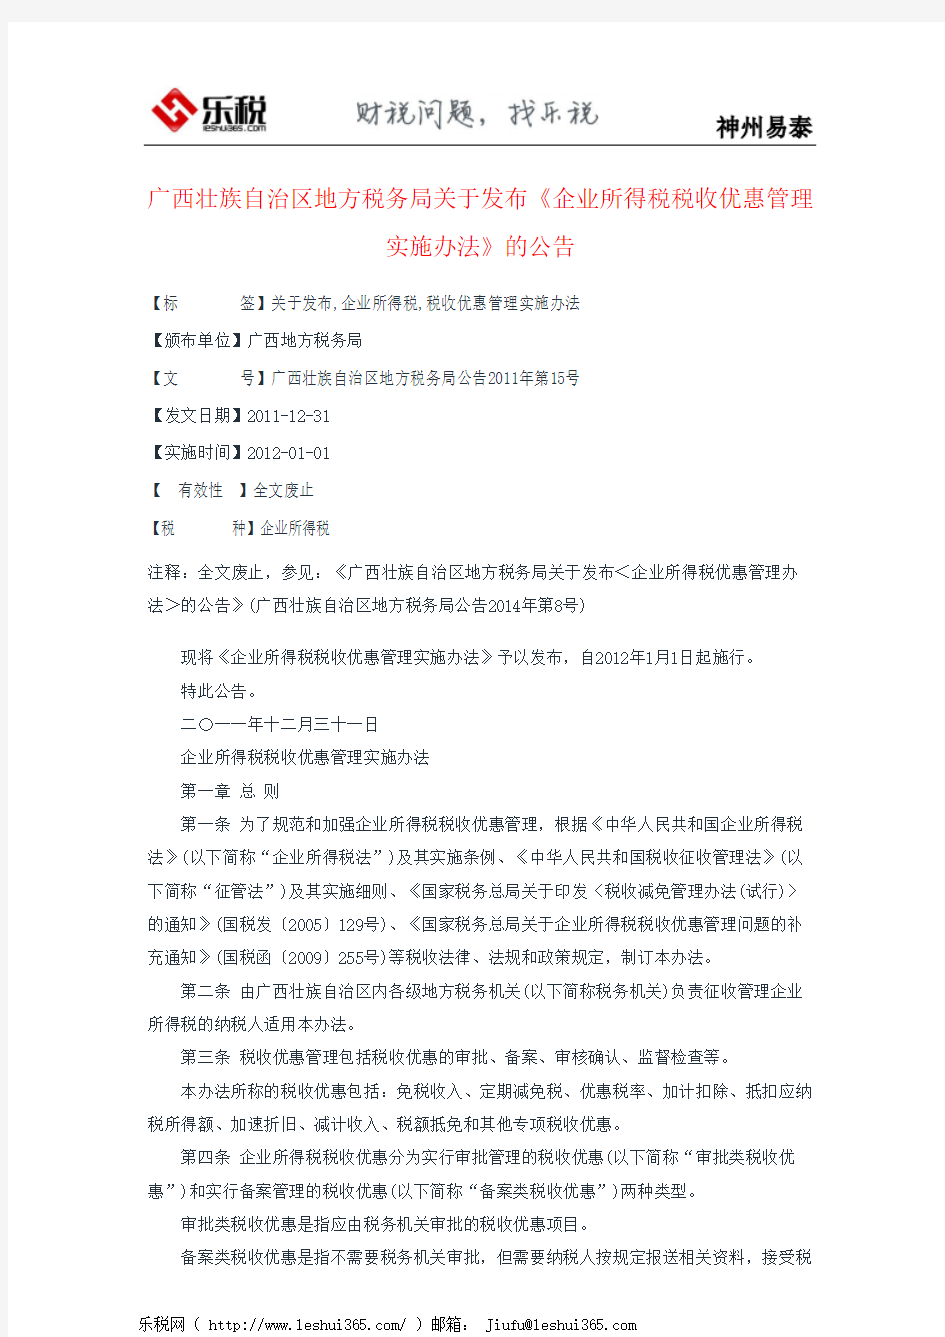 广西壮族自治区地方税务局关于发布《企业所得税税收优惠管理实施